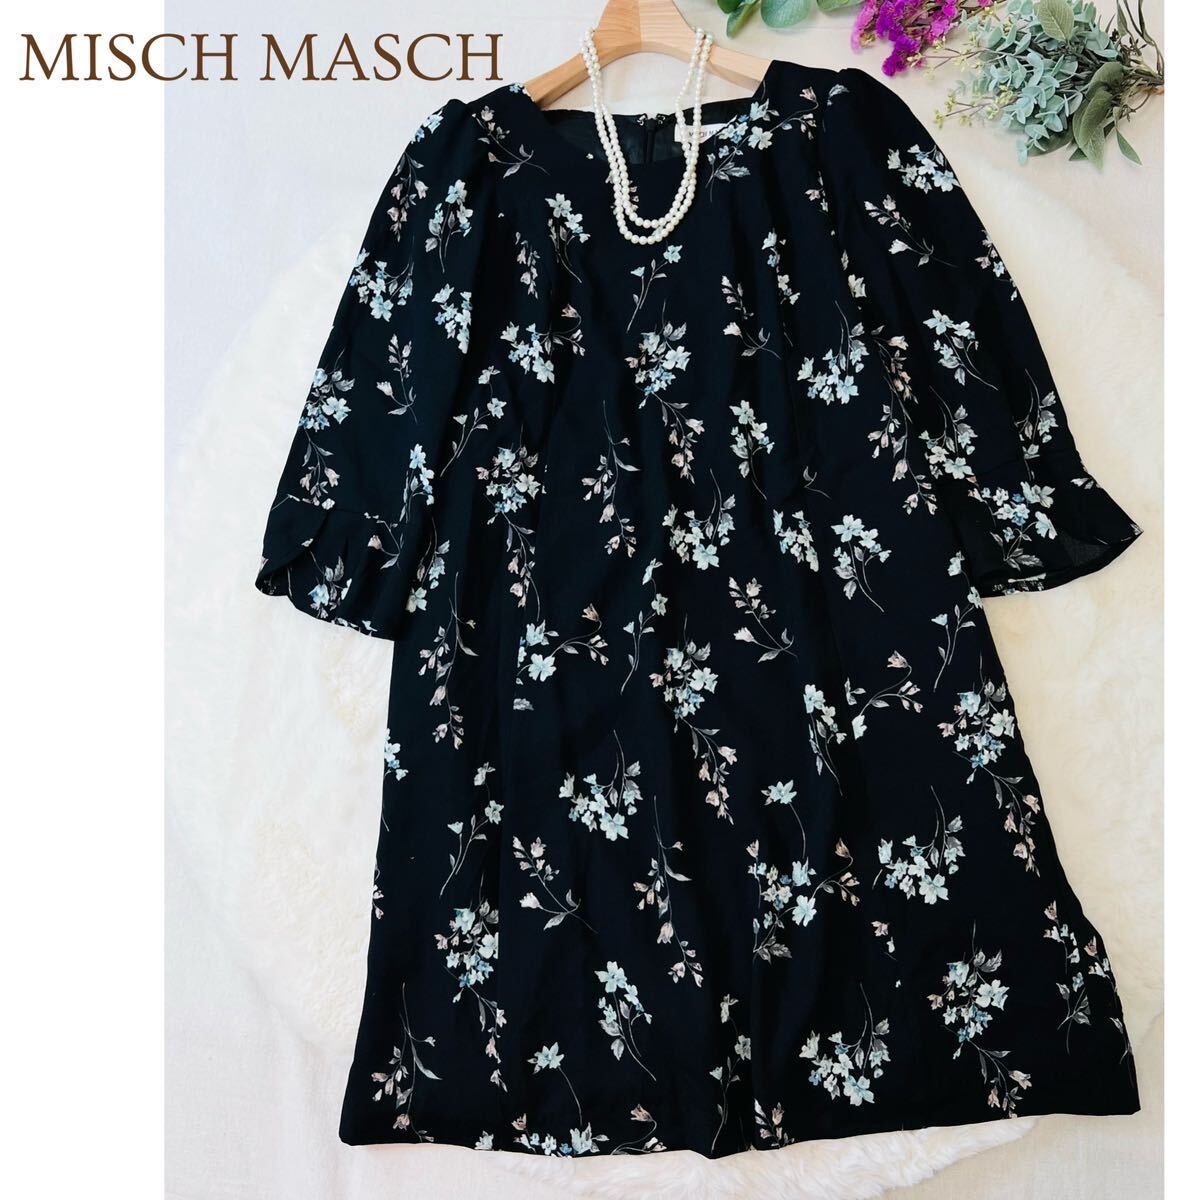 【新品】MISCH MASCH ミッシュマッシュ 七分袖 花柄 ワンピース 総柄 Mサイズ 黒 フラワー 綺麗め レディース A5402_画像1